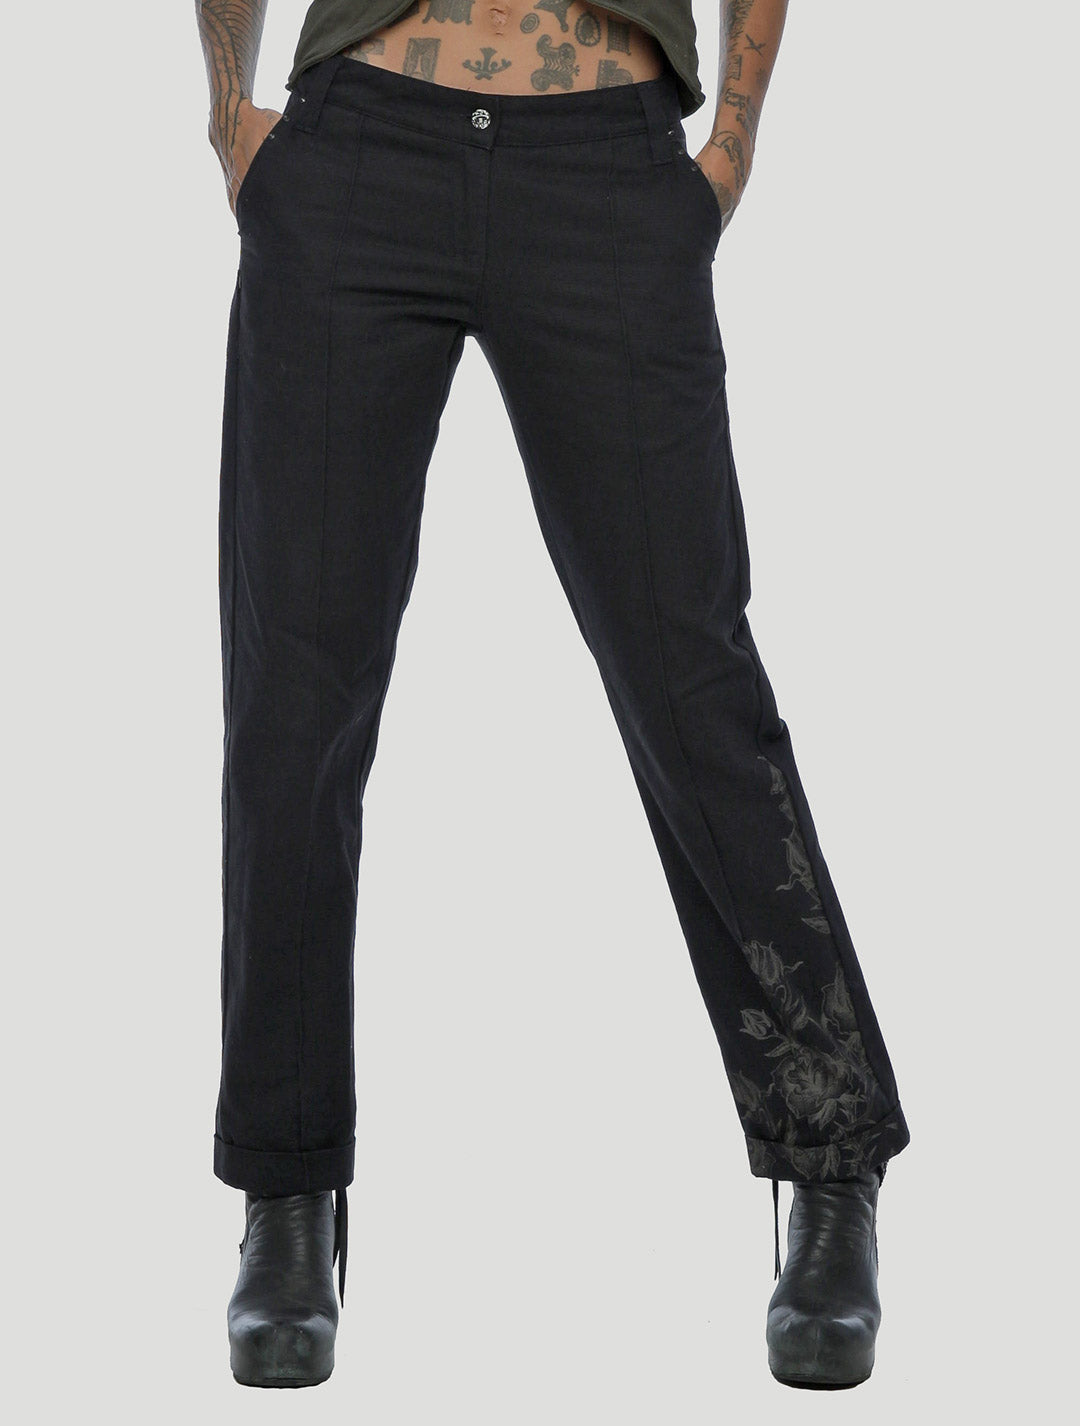 G black Pants by Psylo Fashion